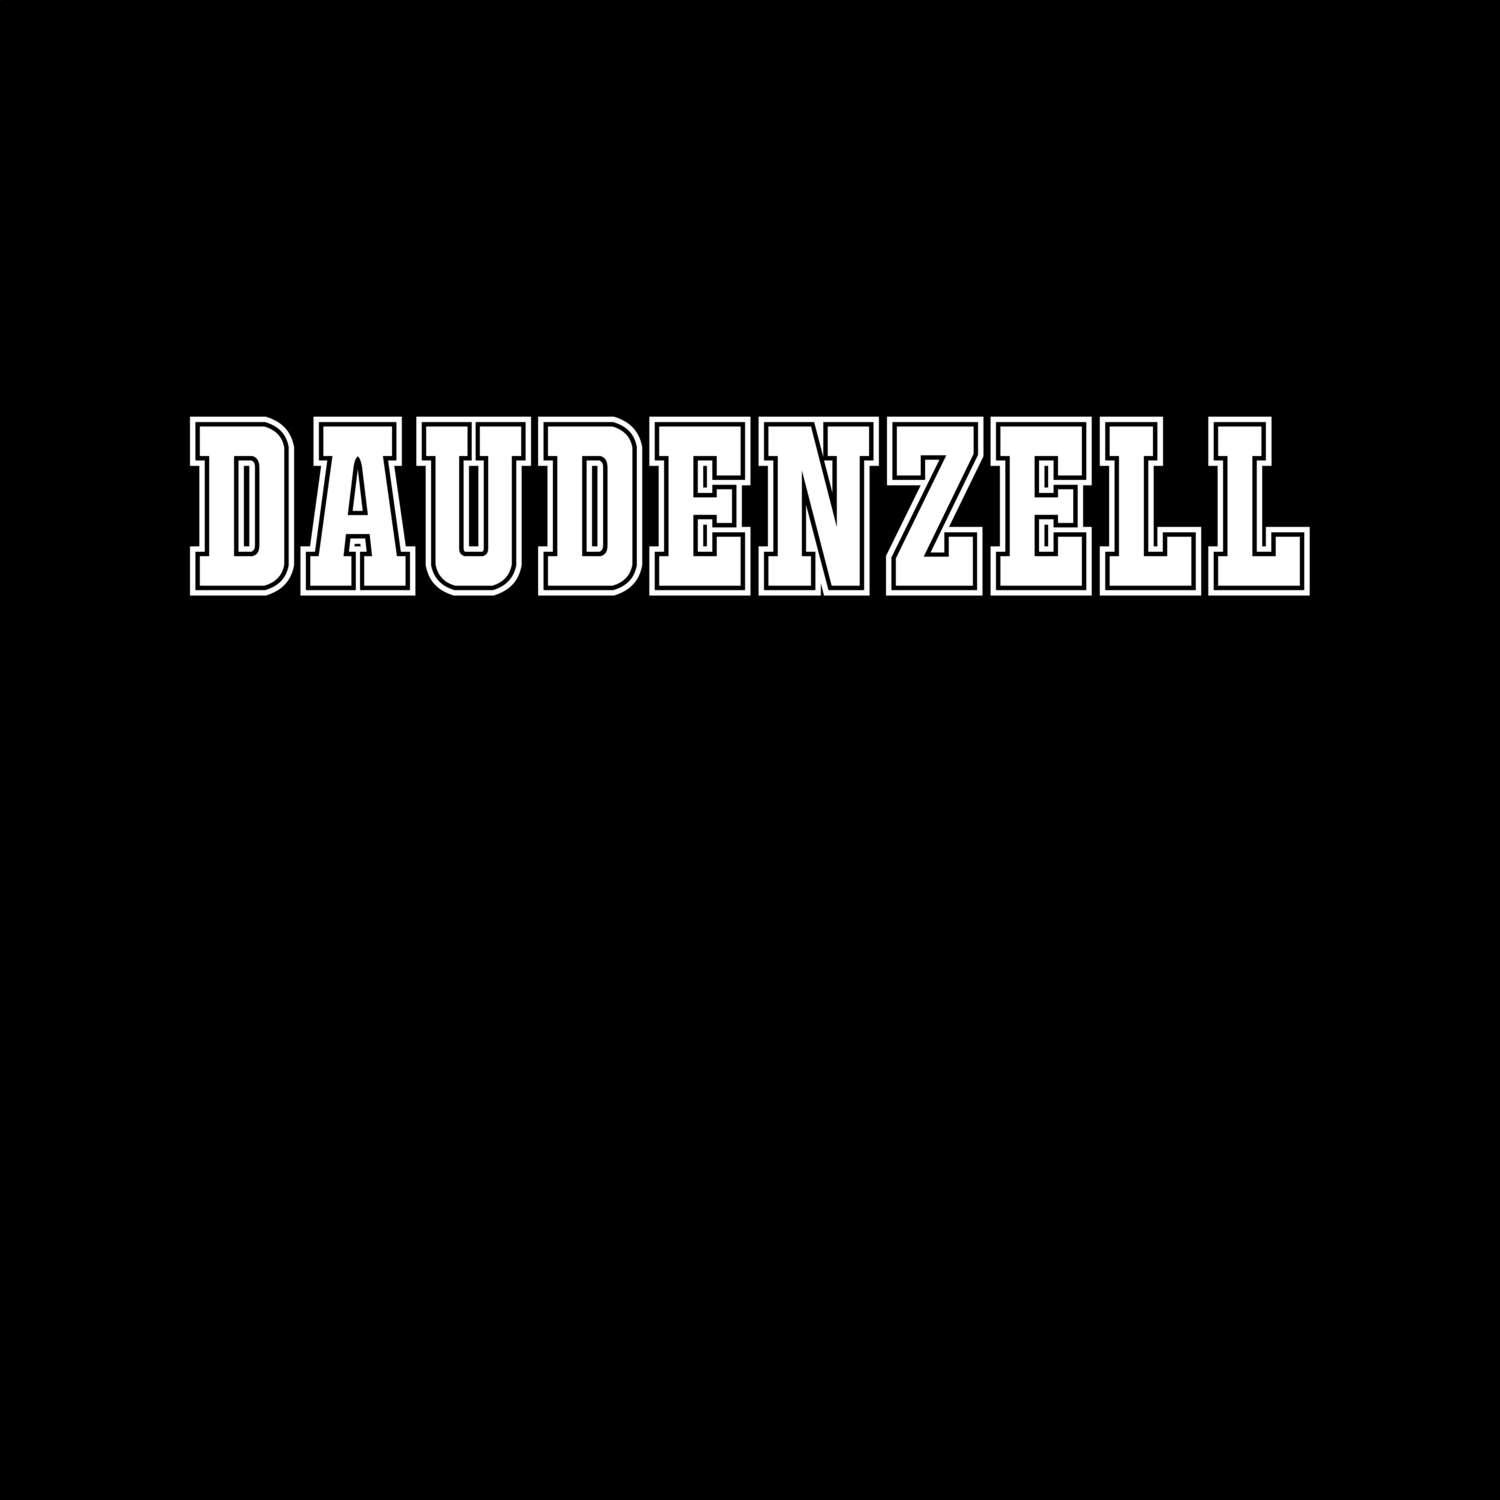 Daudenzell T-Shirt »Classic«